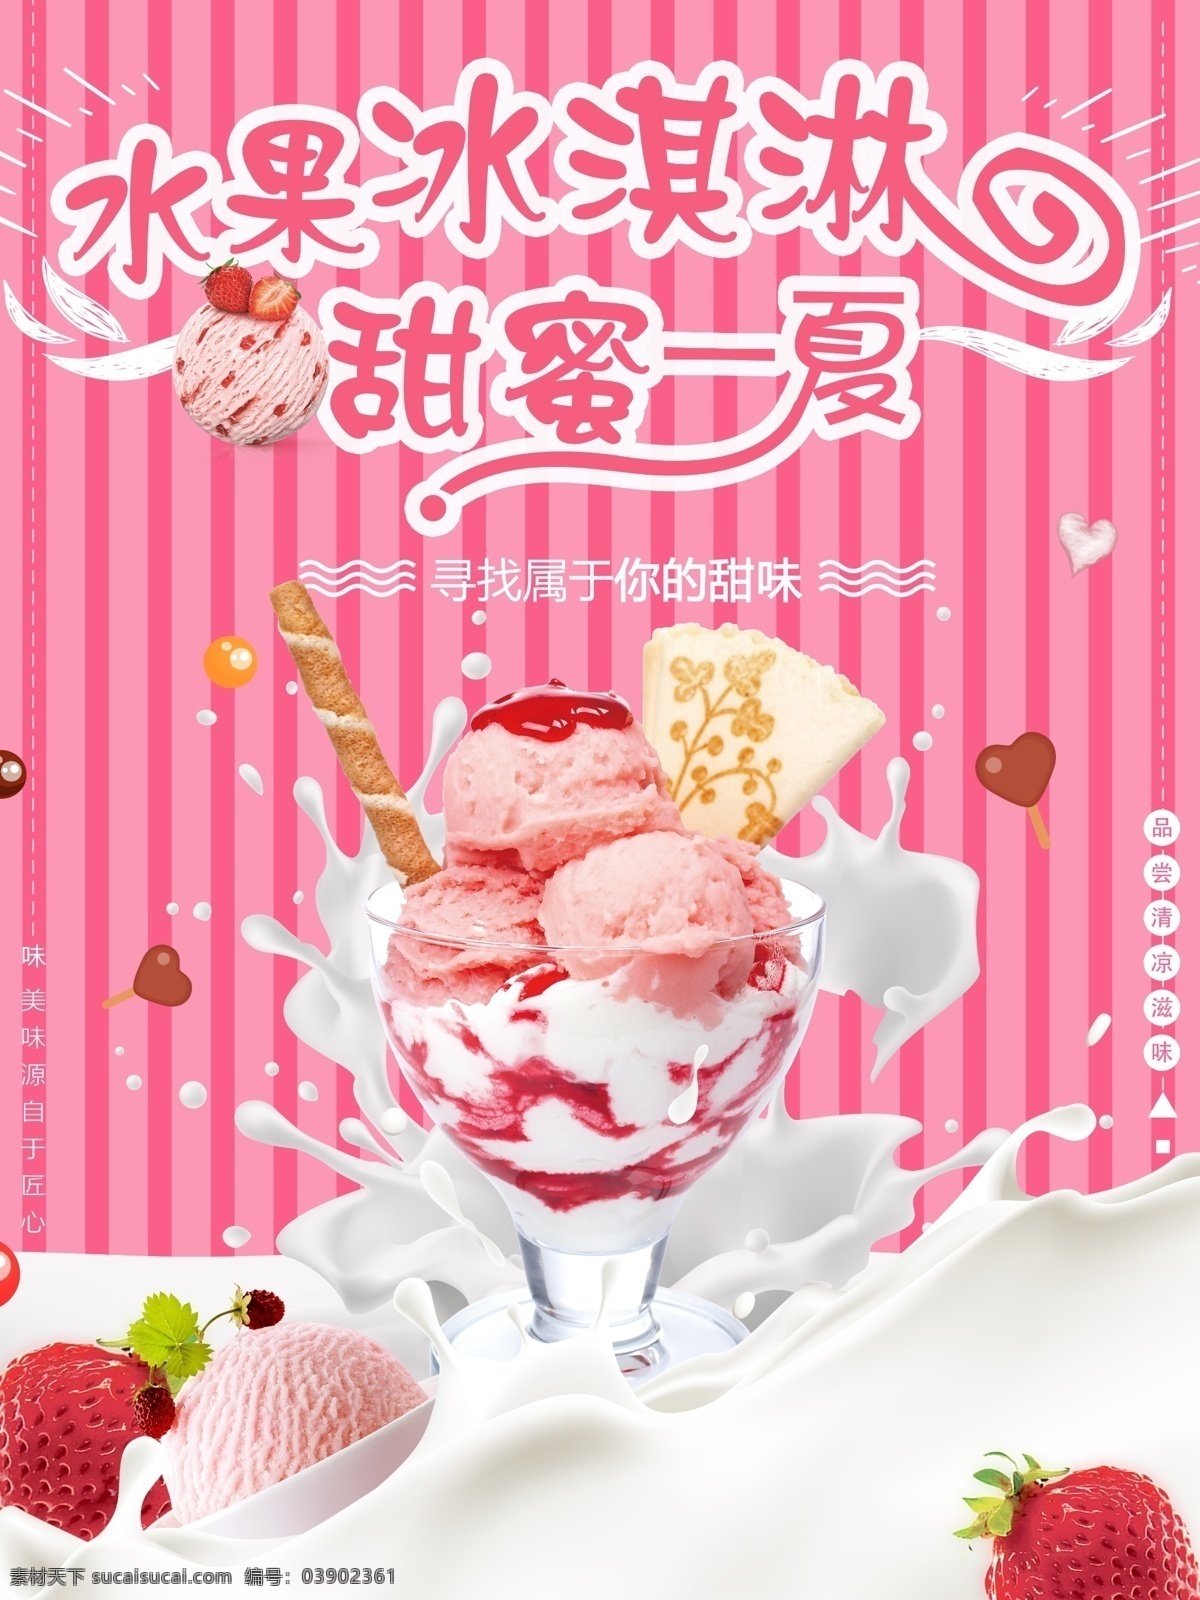 水果 冰淇淋 甜蜜 一夏 粉色 创意 促销 美食 海报 水果冰淇淋 小清新 浪漫 草莓 ps模板 甜蜜一夏 卡通主题字 夏季美食 夏季冰饮